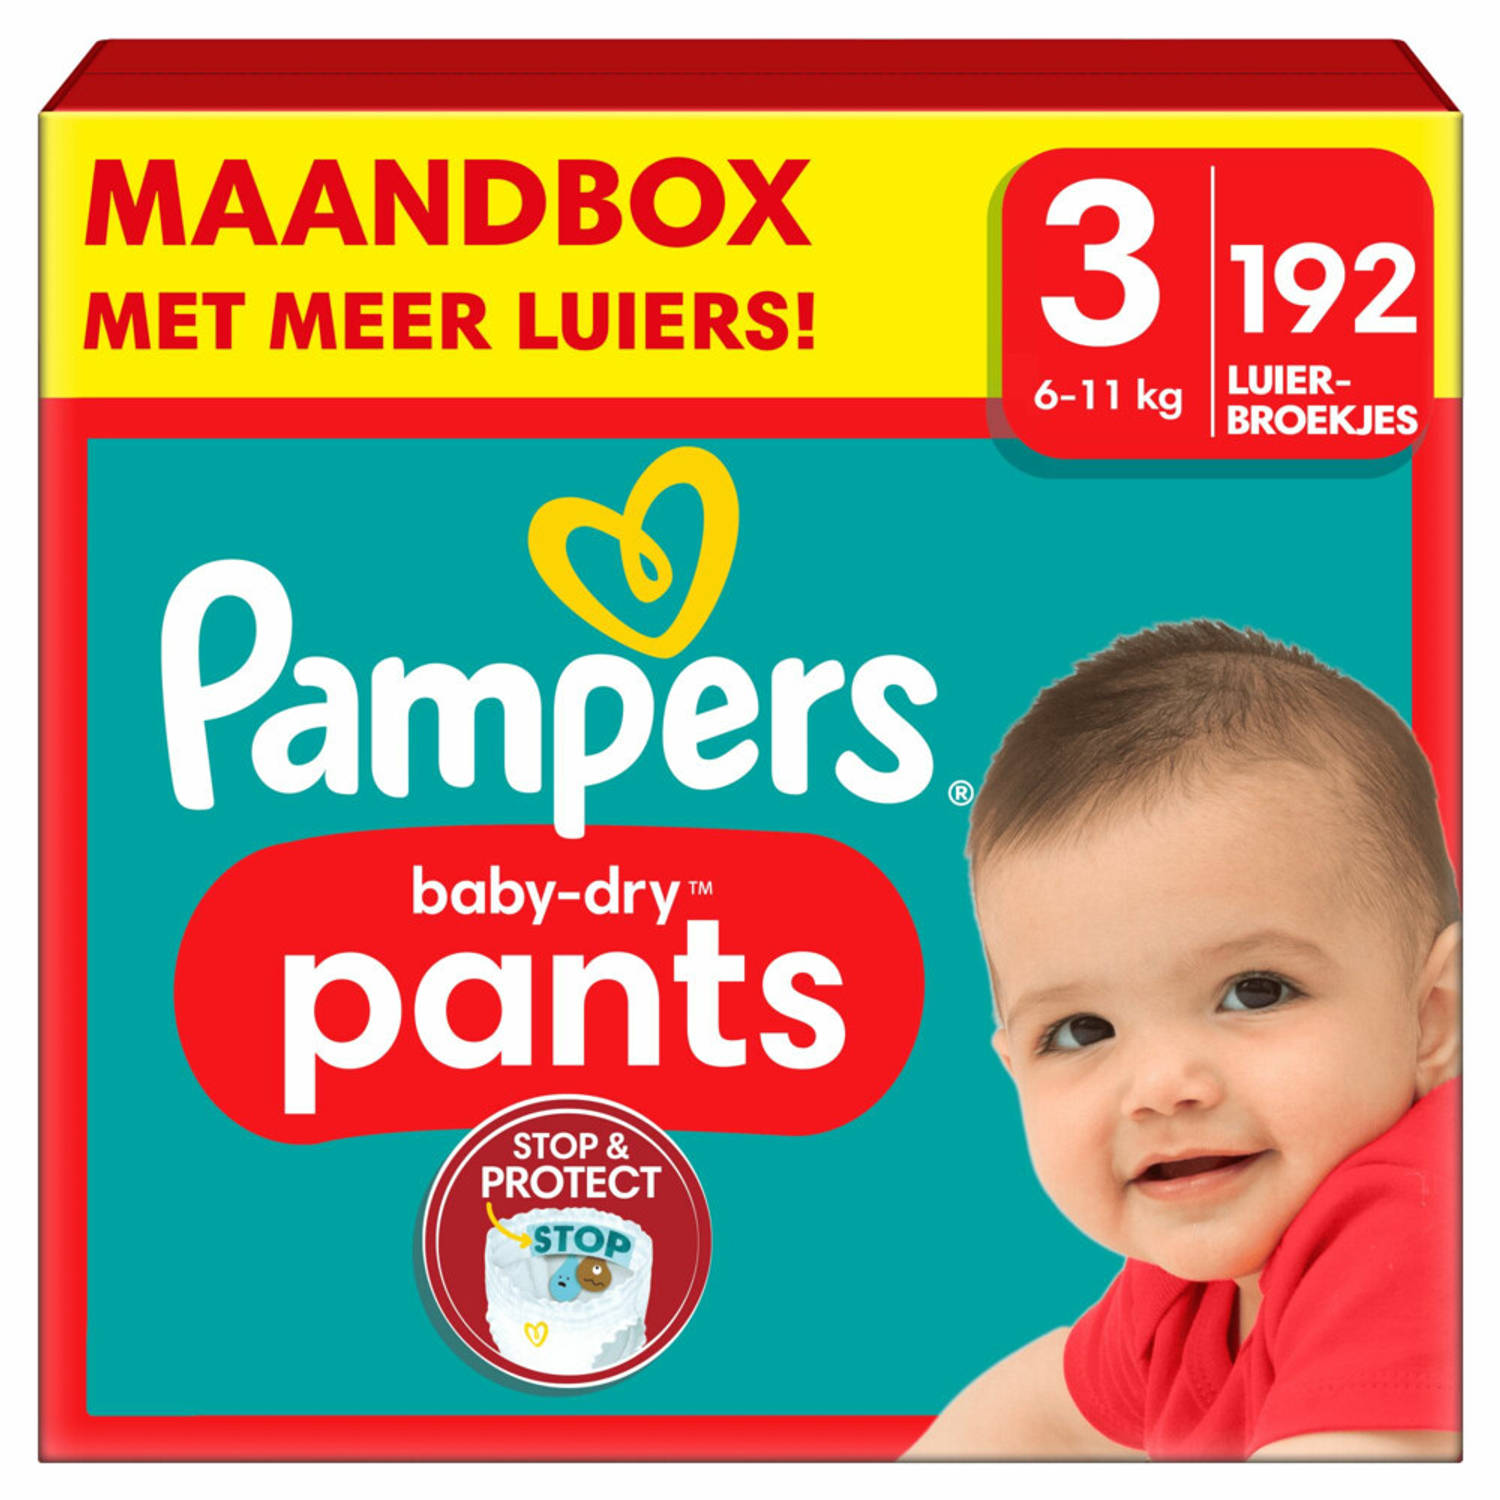 Pampers Baby Dry Pants Maat 3 Maandbox 192 Luierbroekjes